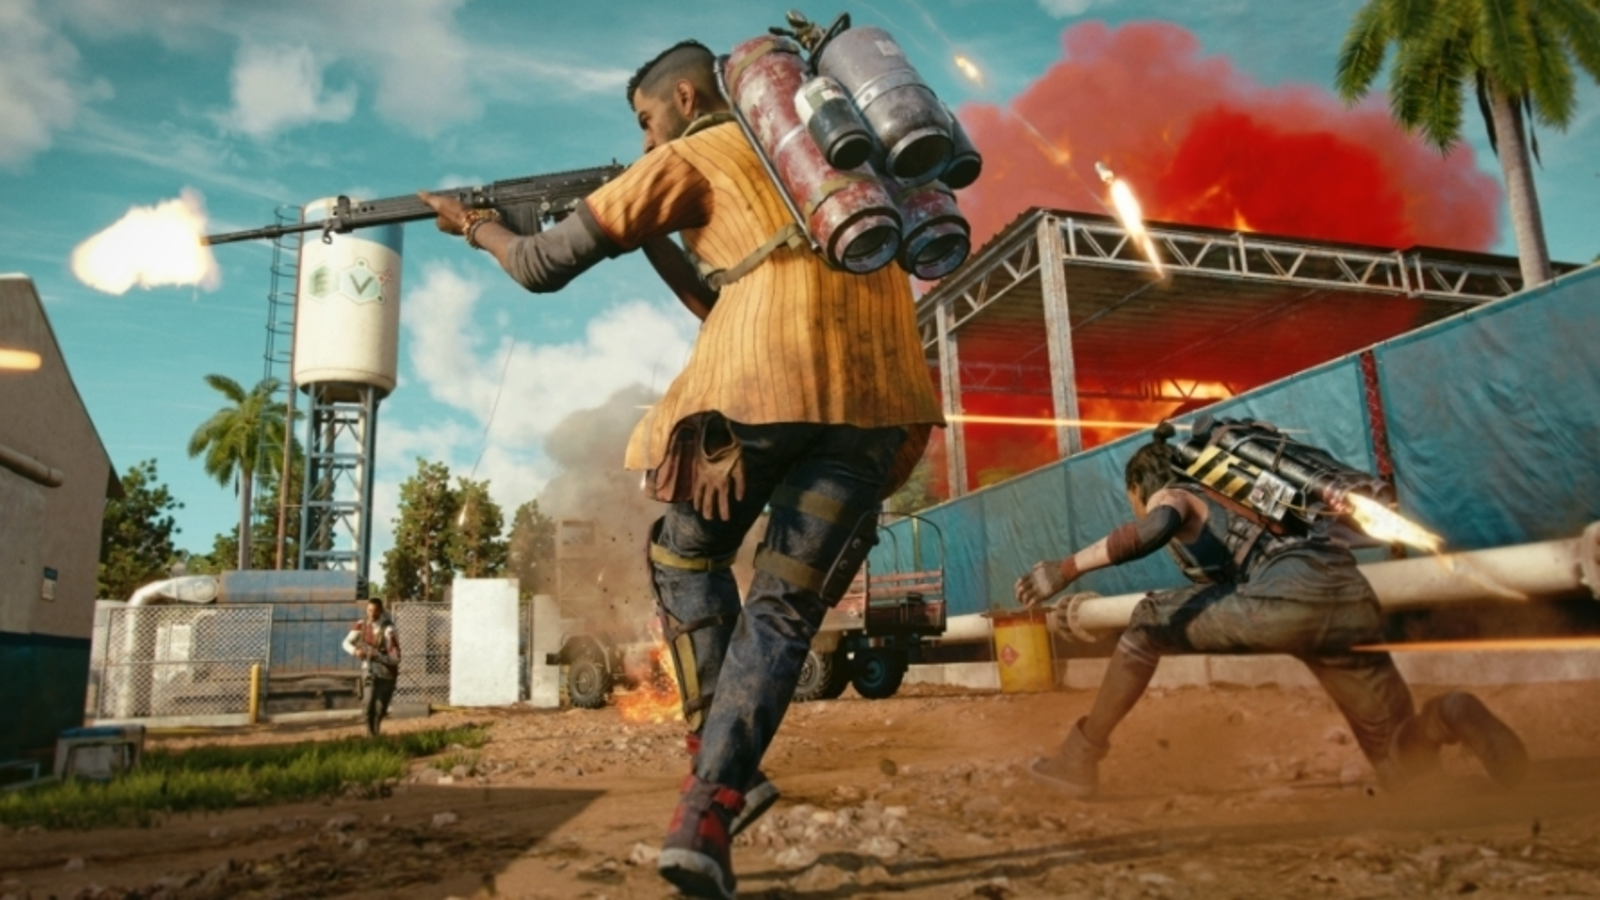 vriendelijk Aanvrager Illusie Far Cry 6 - kody: czy są dostępne | Eurogamer.pl